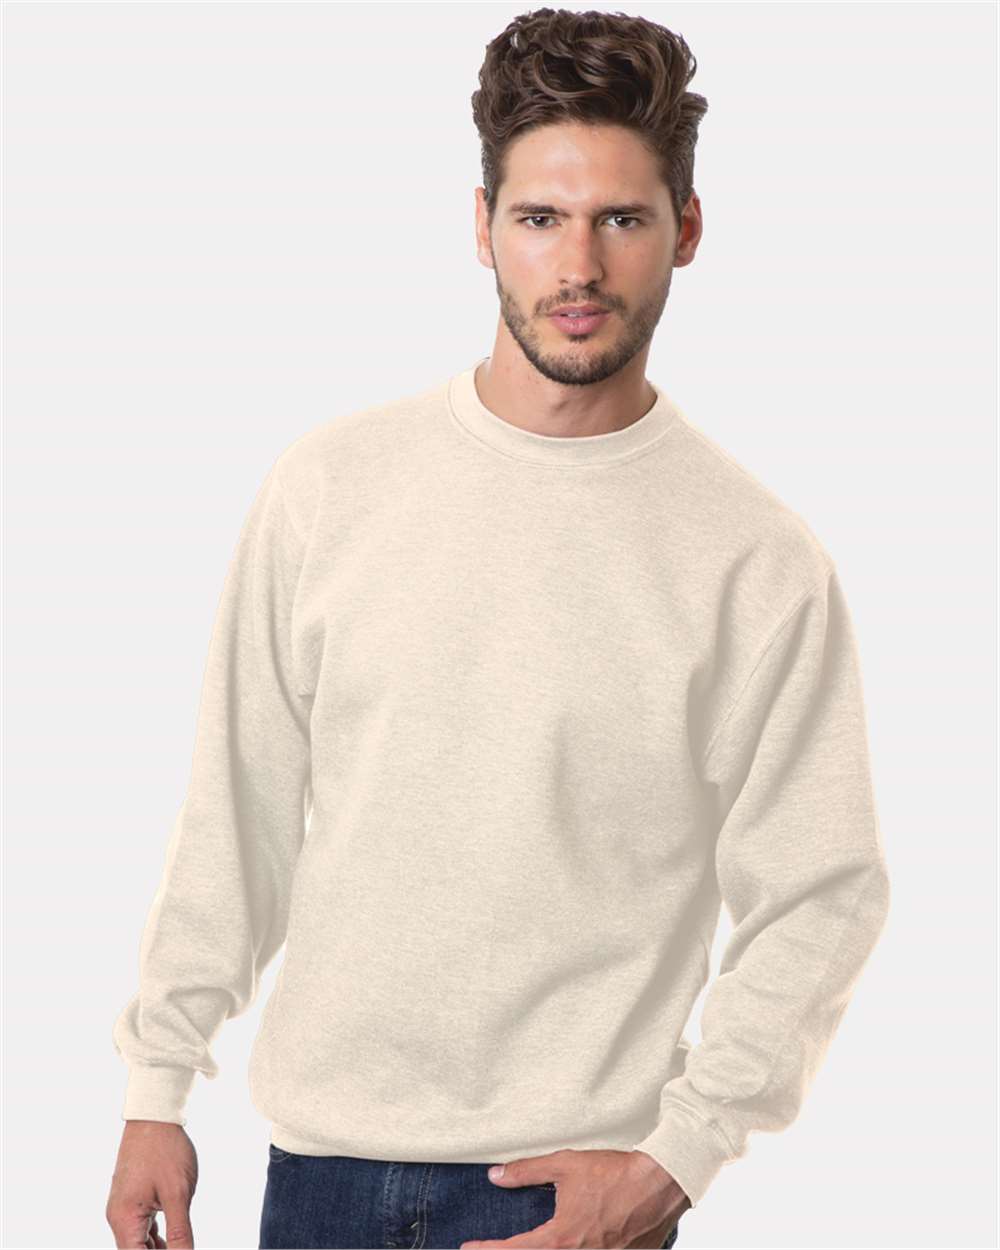 Bayside BA960 9.5 oz., 80/20 Pullover Hooded Sweatshirt